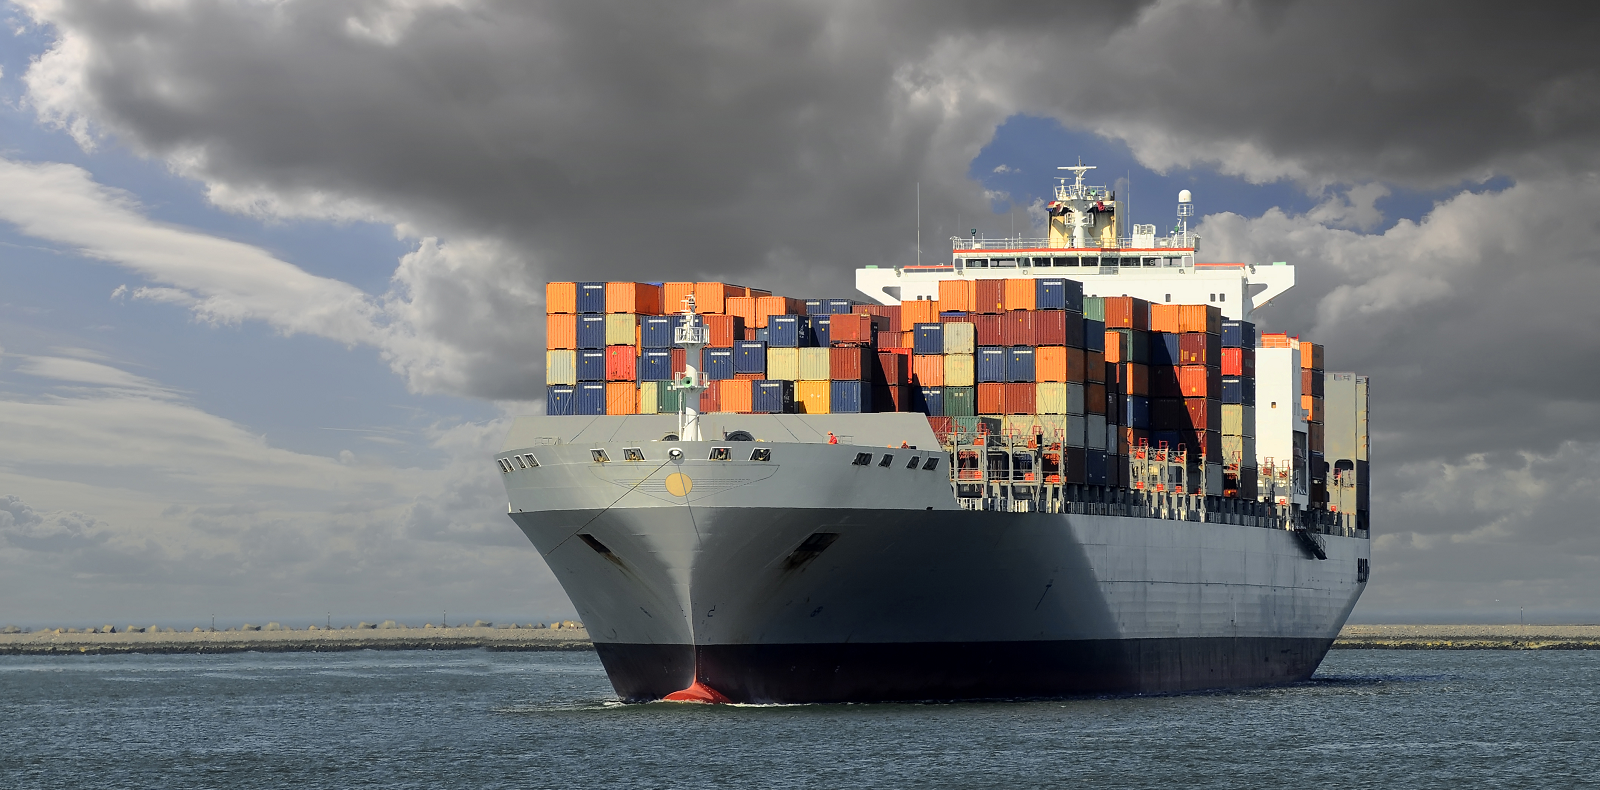 Компания SDV Cargo предлагает услуги по морским контейнерным перевозкам через отечественные и зарубежные порты Санкт- Петербурга, Новороссийска, Риги, Владивостока, Восточного и многих других городов.